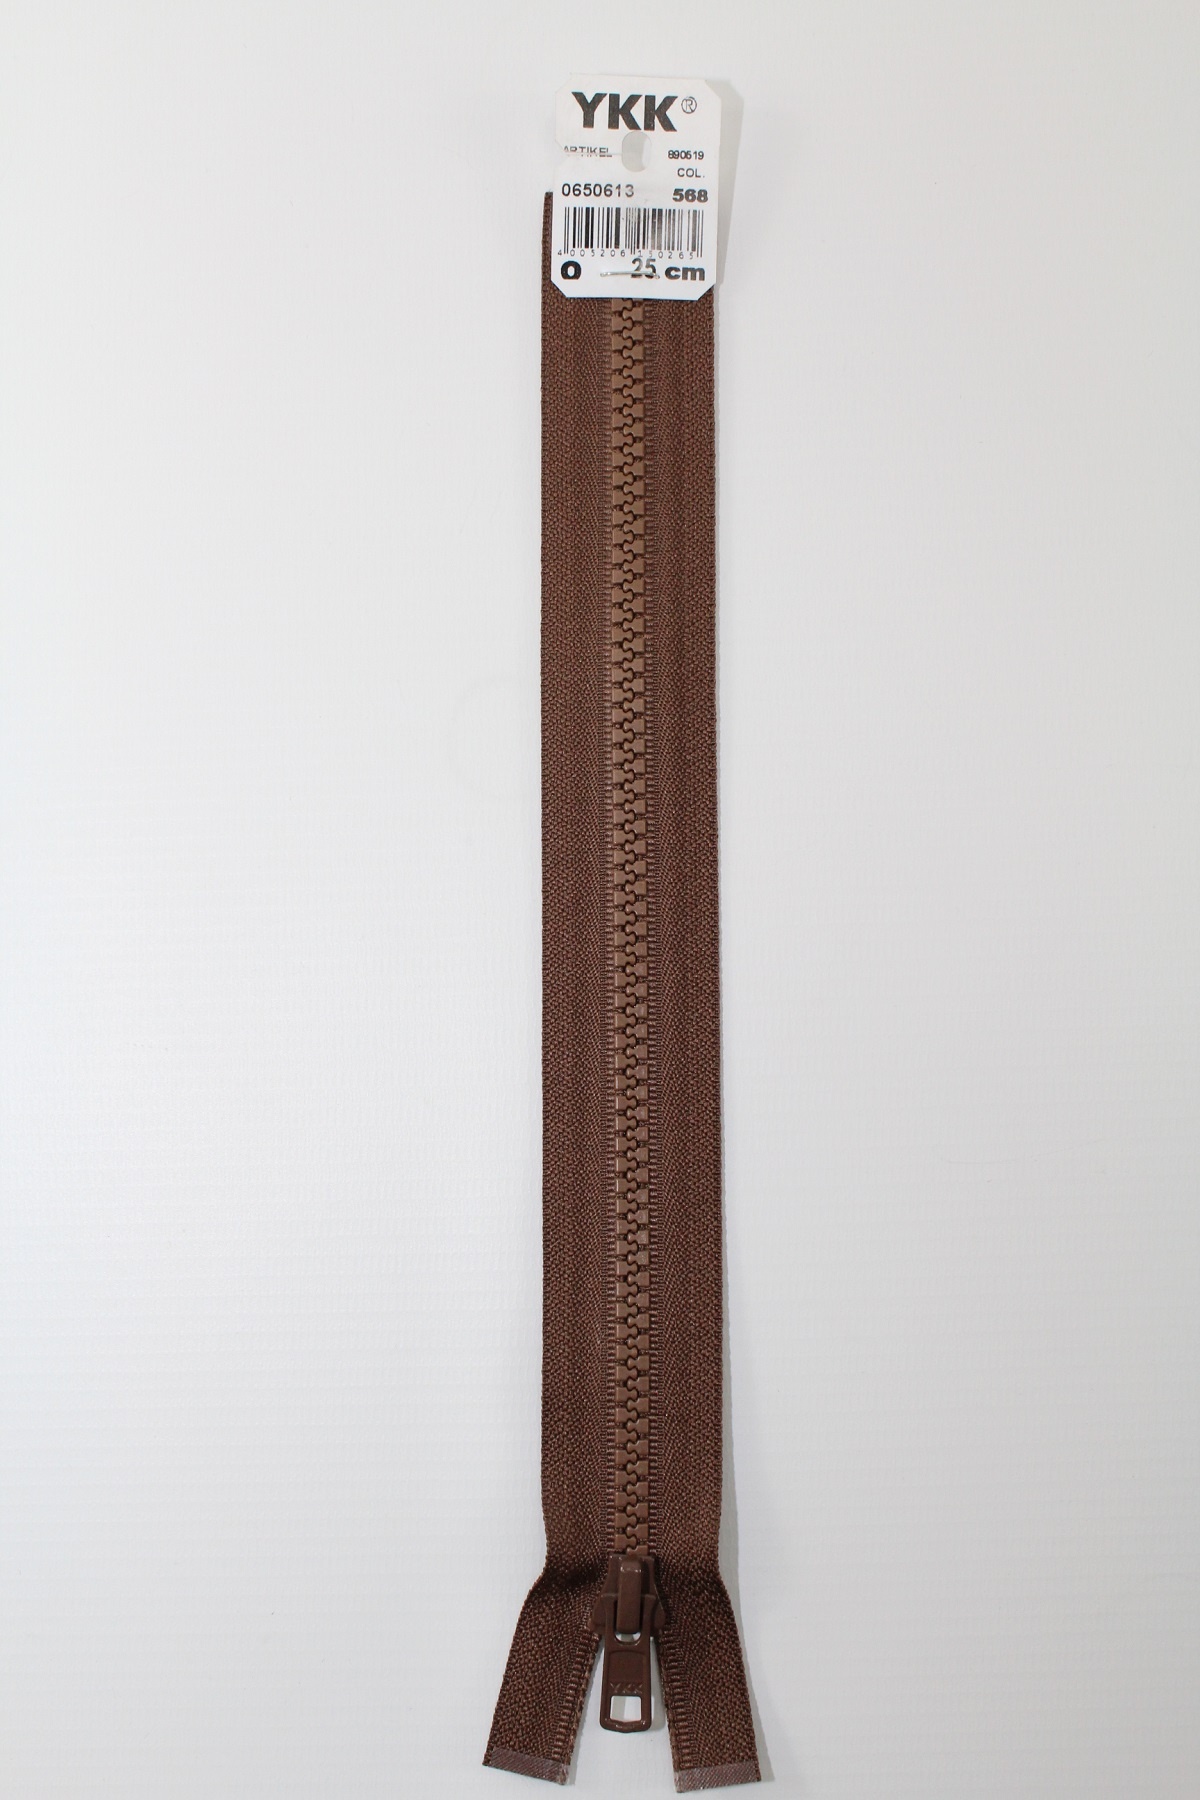 YKK - Reissverschlüsse 25 cm - 80 cm, teilbar, tabak